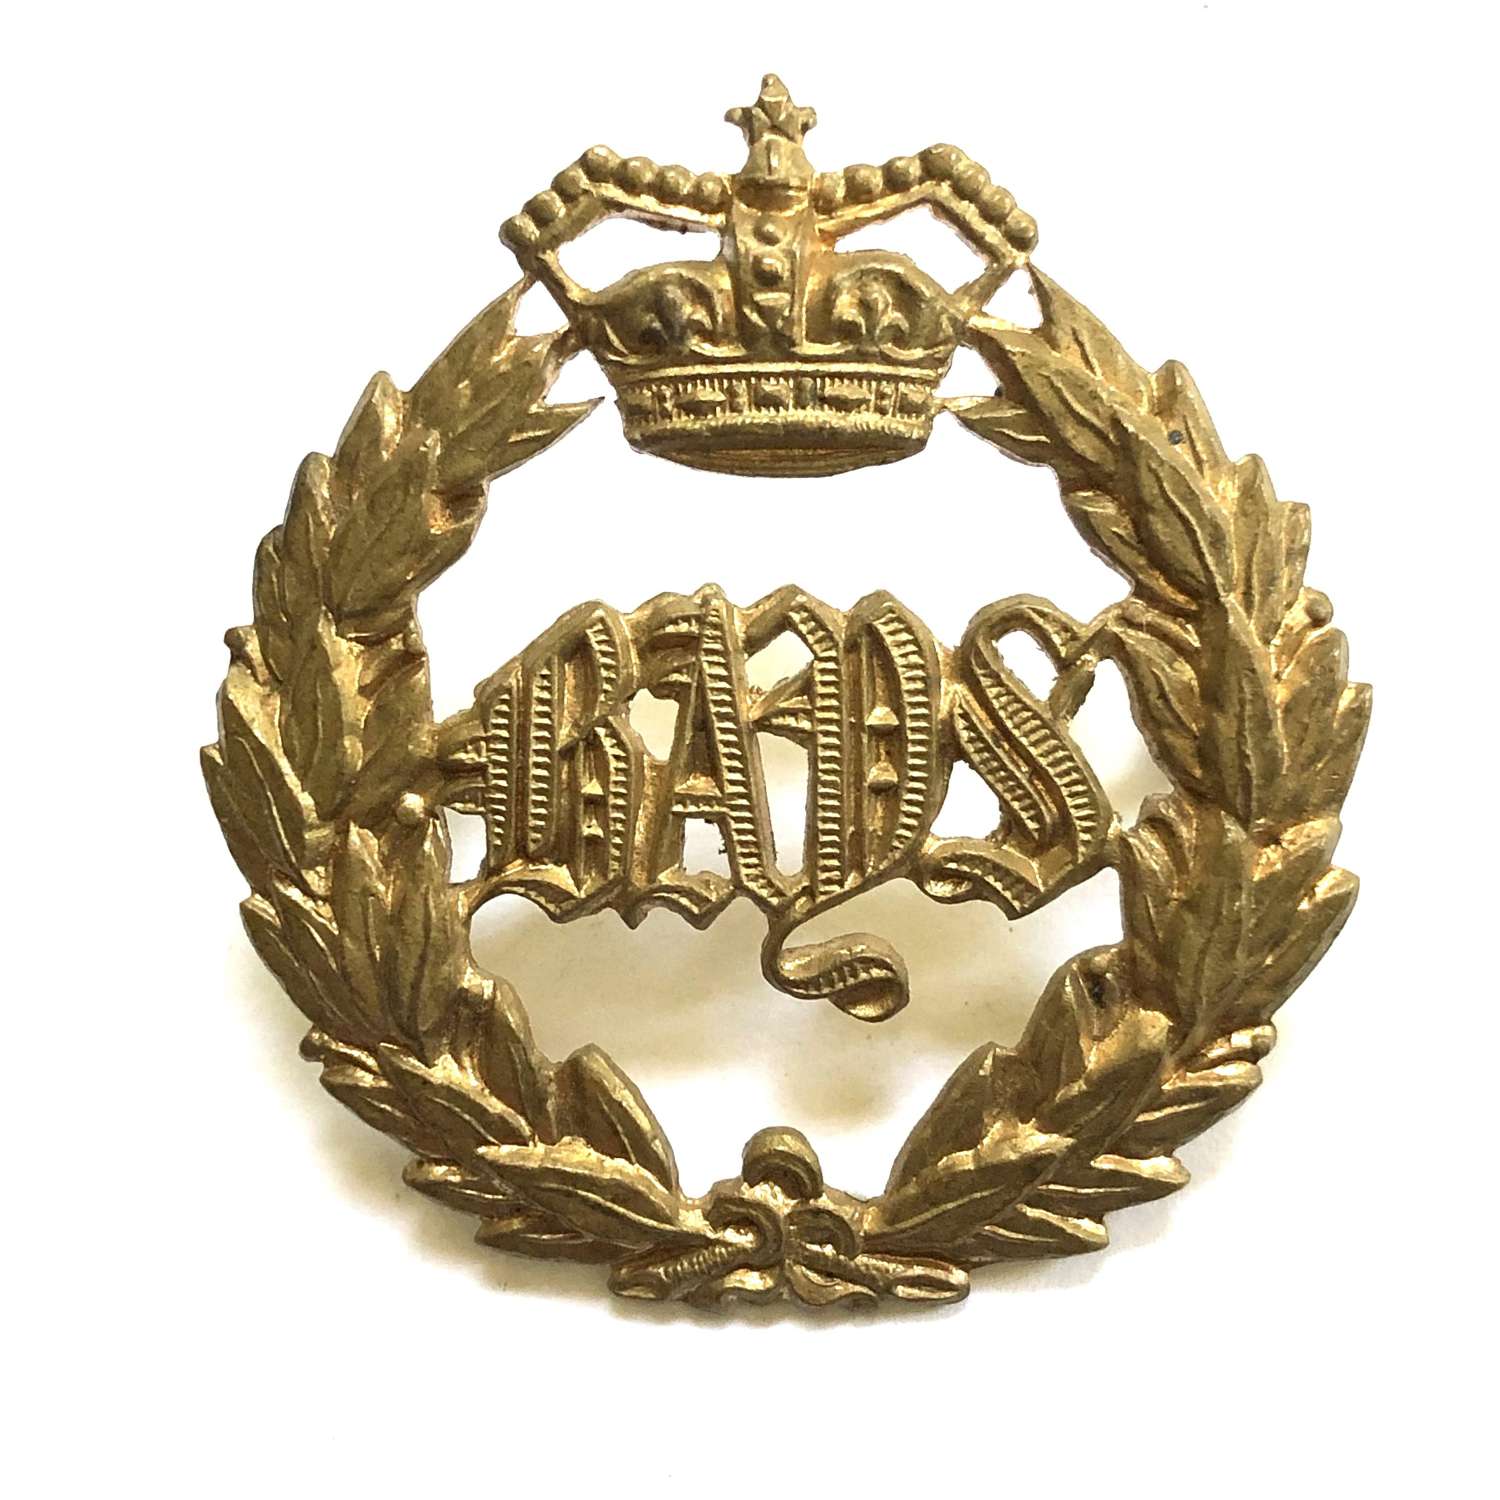 2nd Dragoon Guards (Queen’s Bays) Victorian cap badge c1896-19010